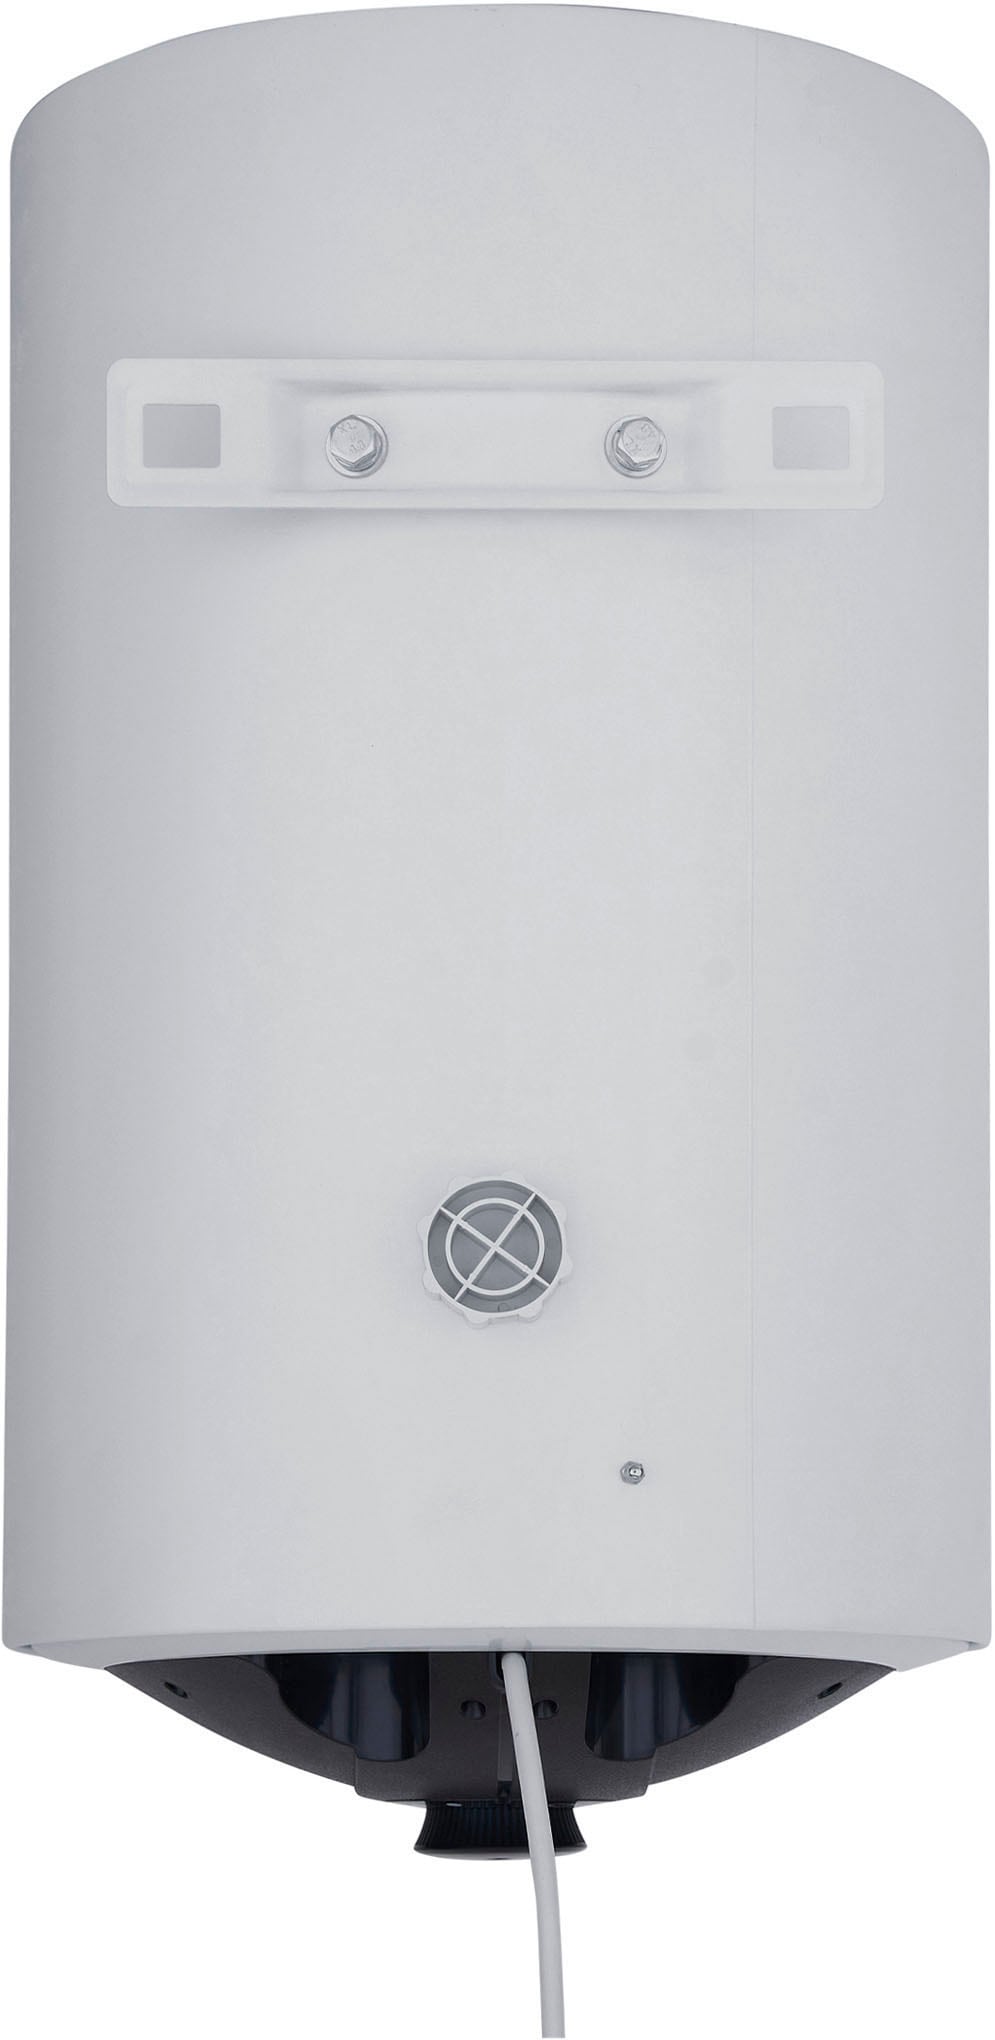 Thermoflow Standspeicher »DS50«, Aufheizzeit von 10 °C auf 65 °C in 102 min